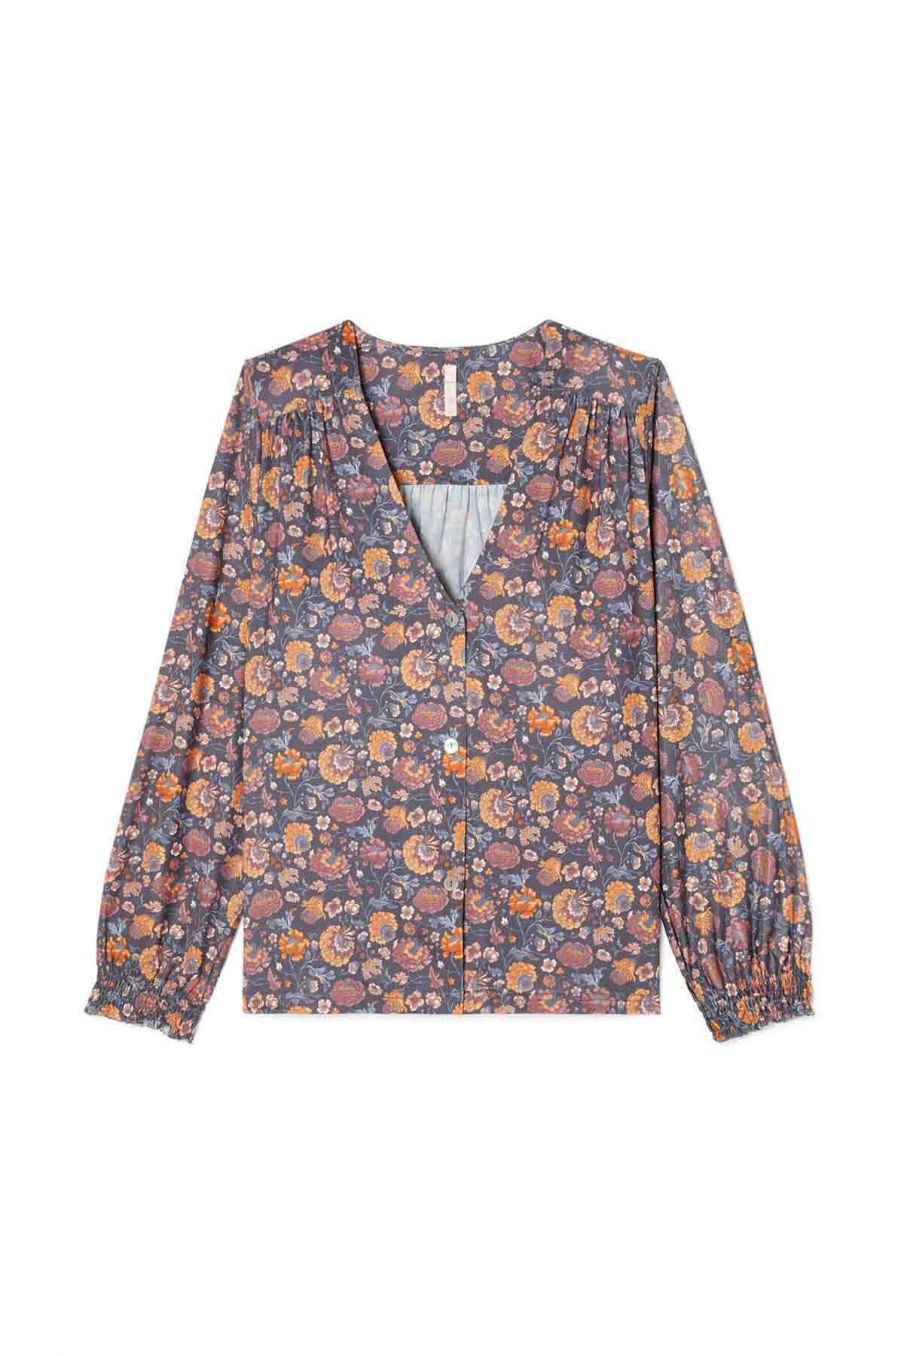 blouse de pyjama femme lorie charcoal bohemian flowers - louise misha